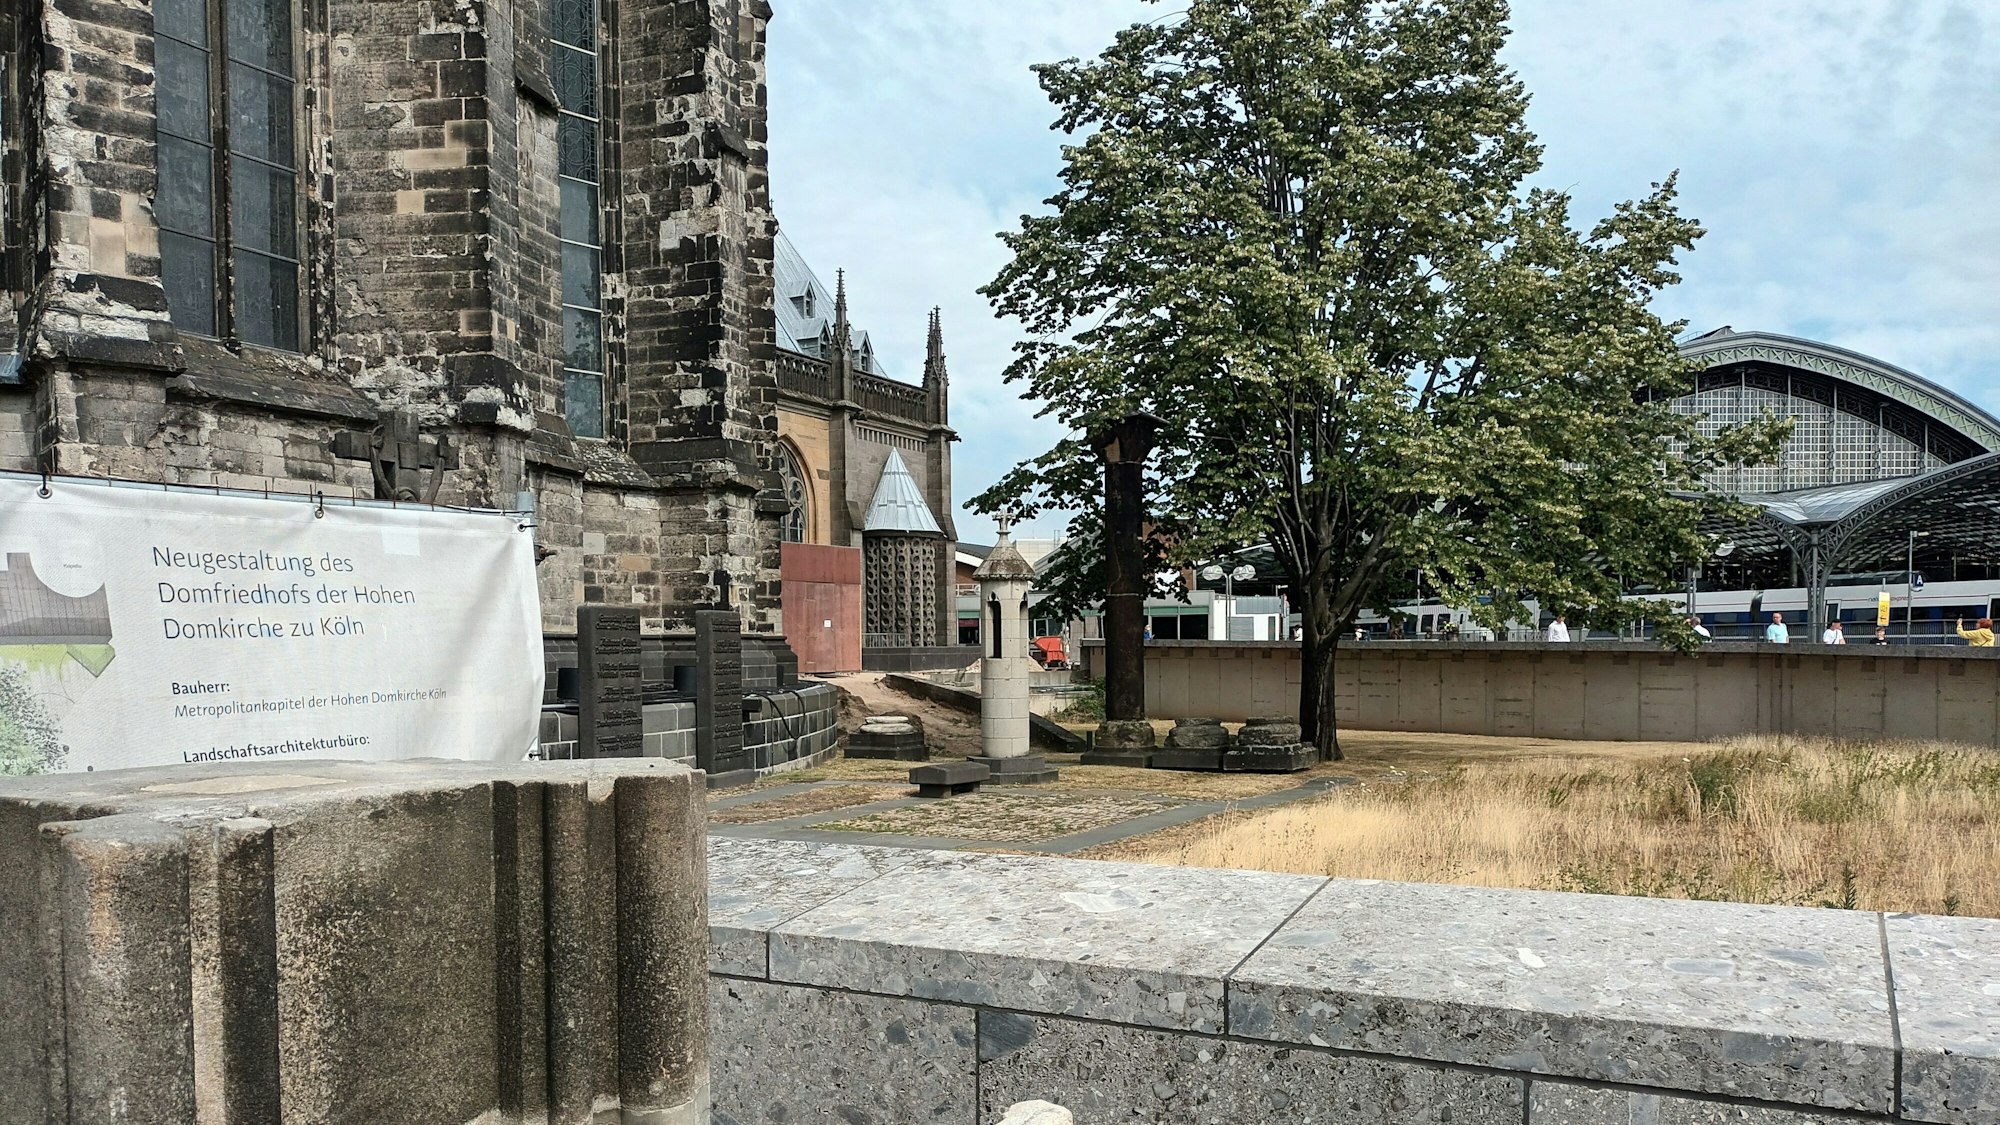 Der Domfriedhof präsentiert sich als unaufgeräumte Fläche mit verdorrtem, langem Grasbewuchs. Links informiert eine Plane über die „Neugestaltung des Domfriedhofs der Hohen Domkirche zu Köln“.